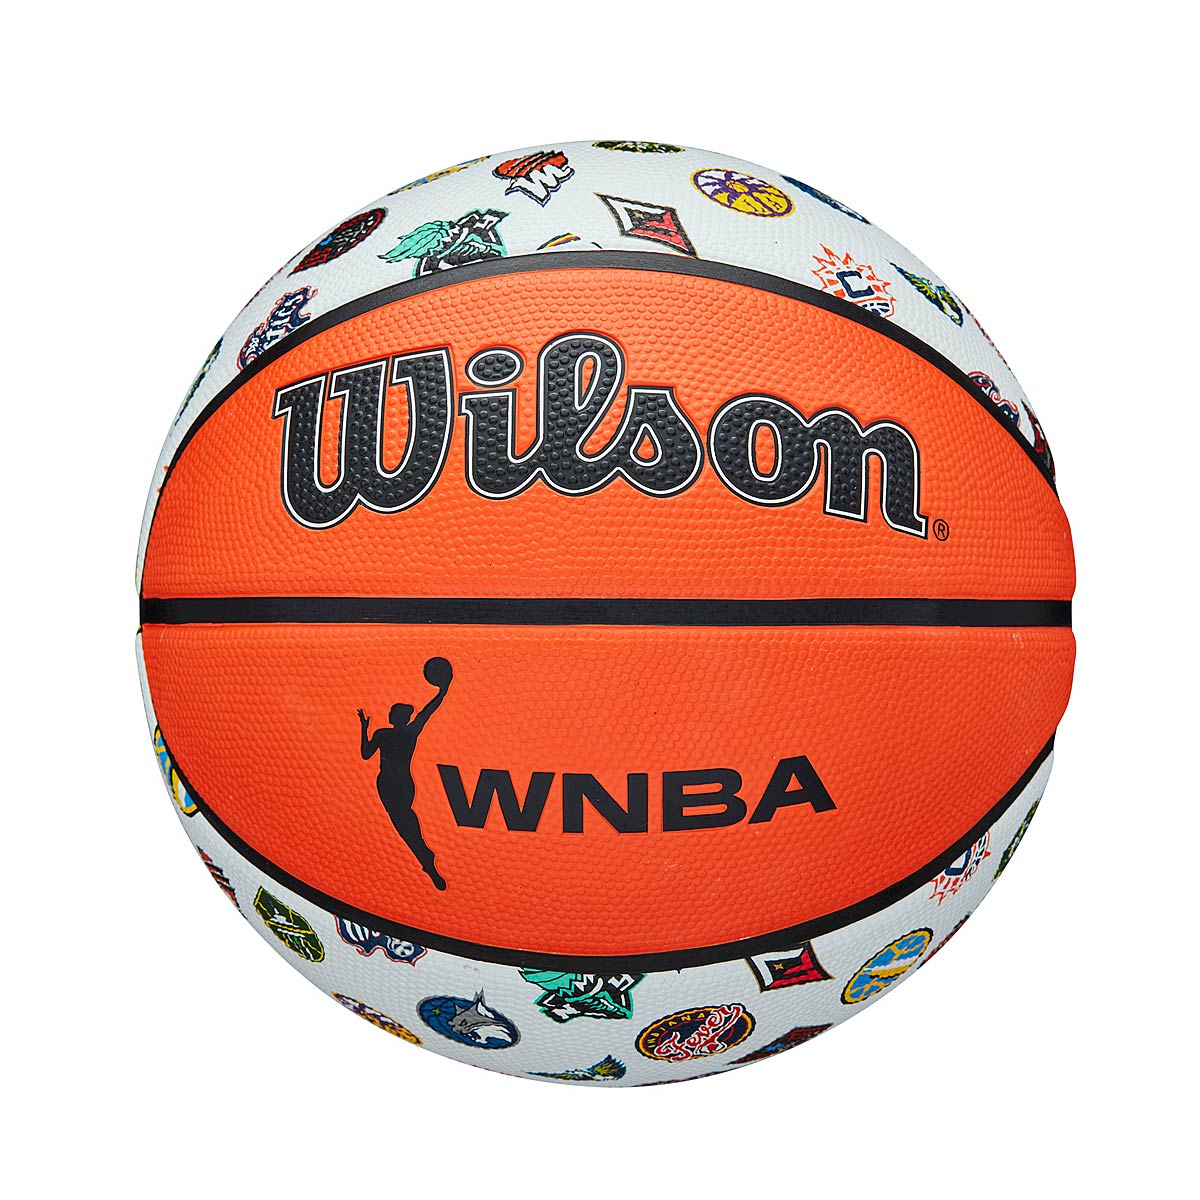 Image of Wilson Wnba All Teams Basketball, Silver